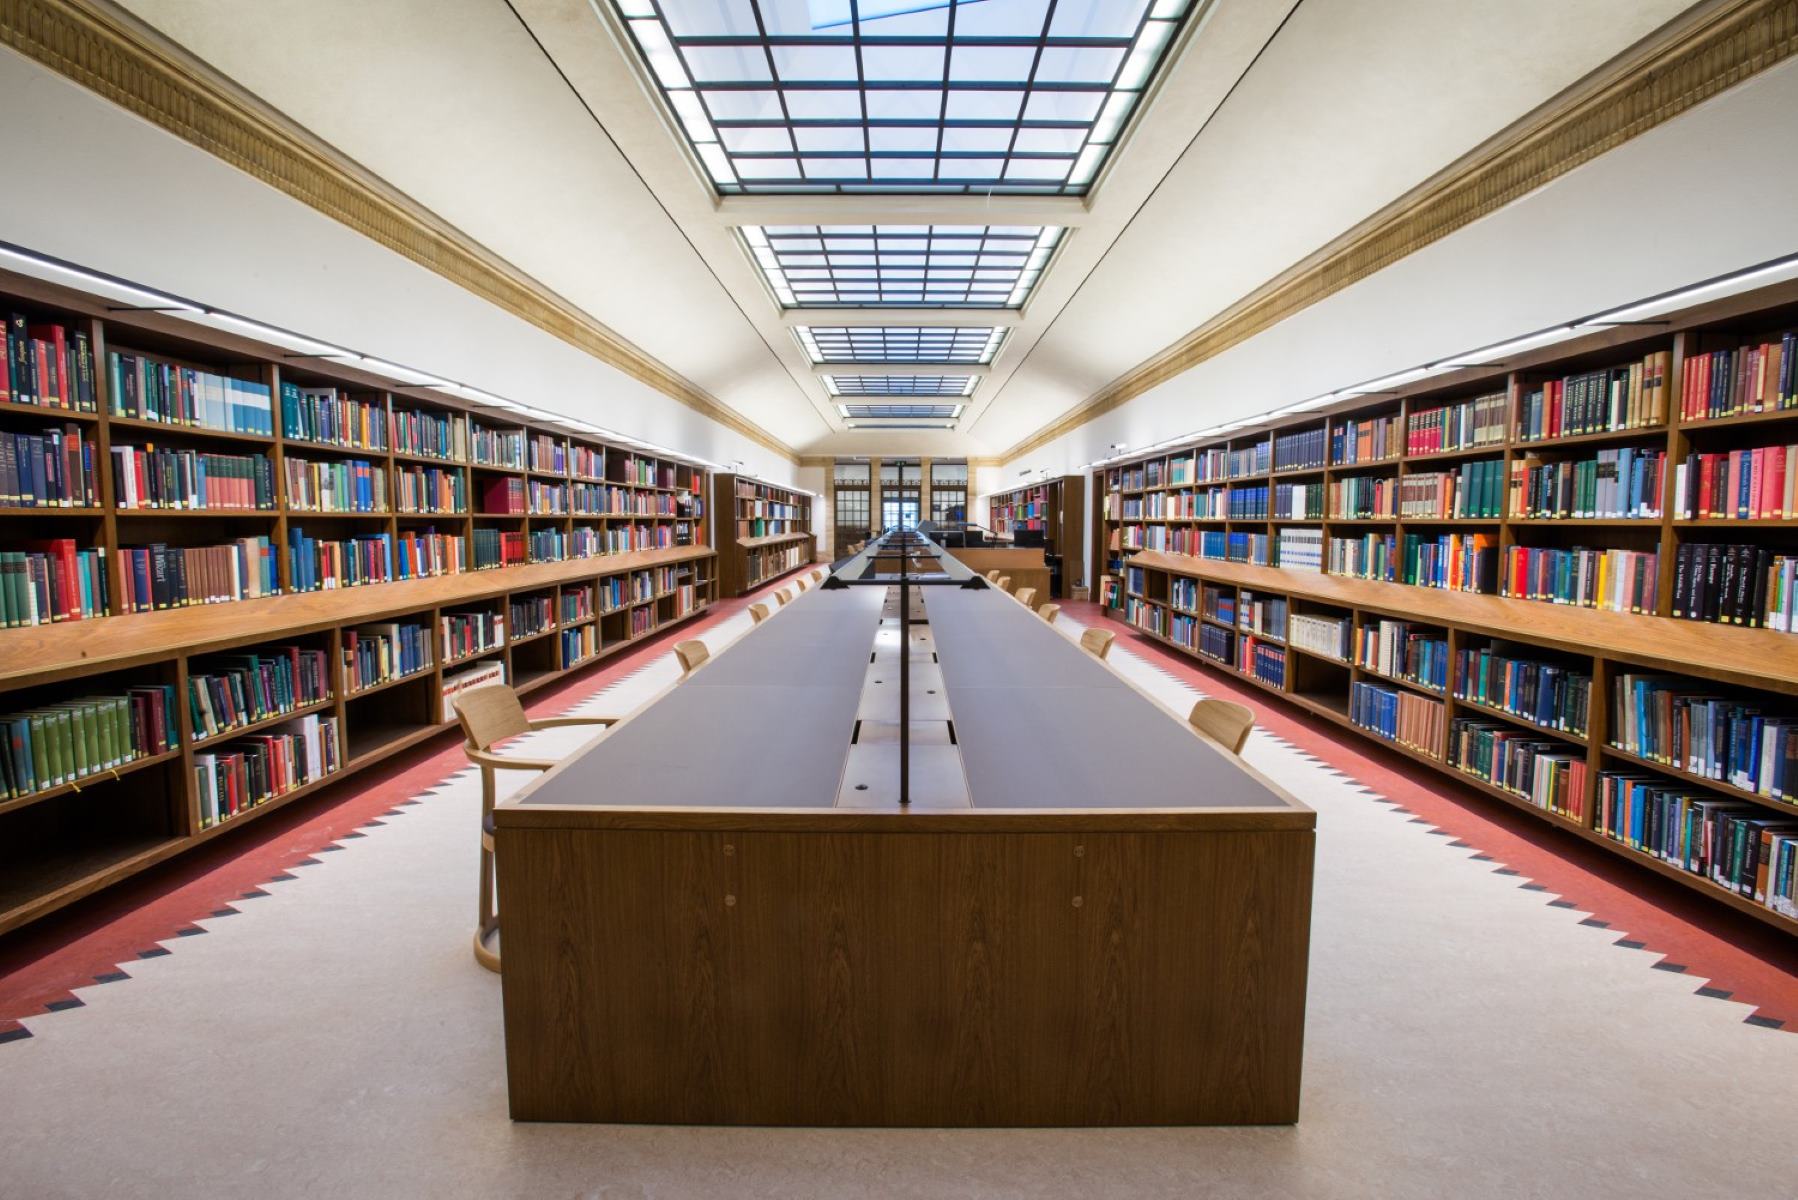 Ld library. Оксфордский университет библиотека. Йельский университет библиотека. Красивая библиотека. Красивые читальные залы.